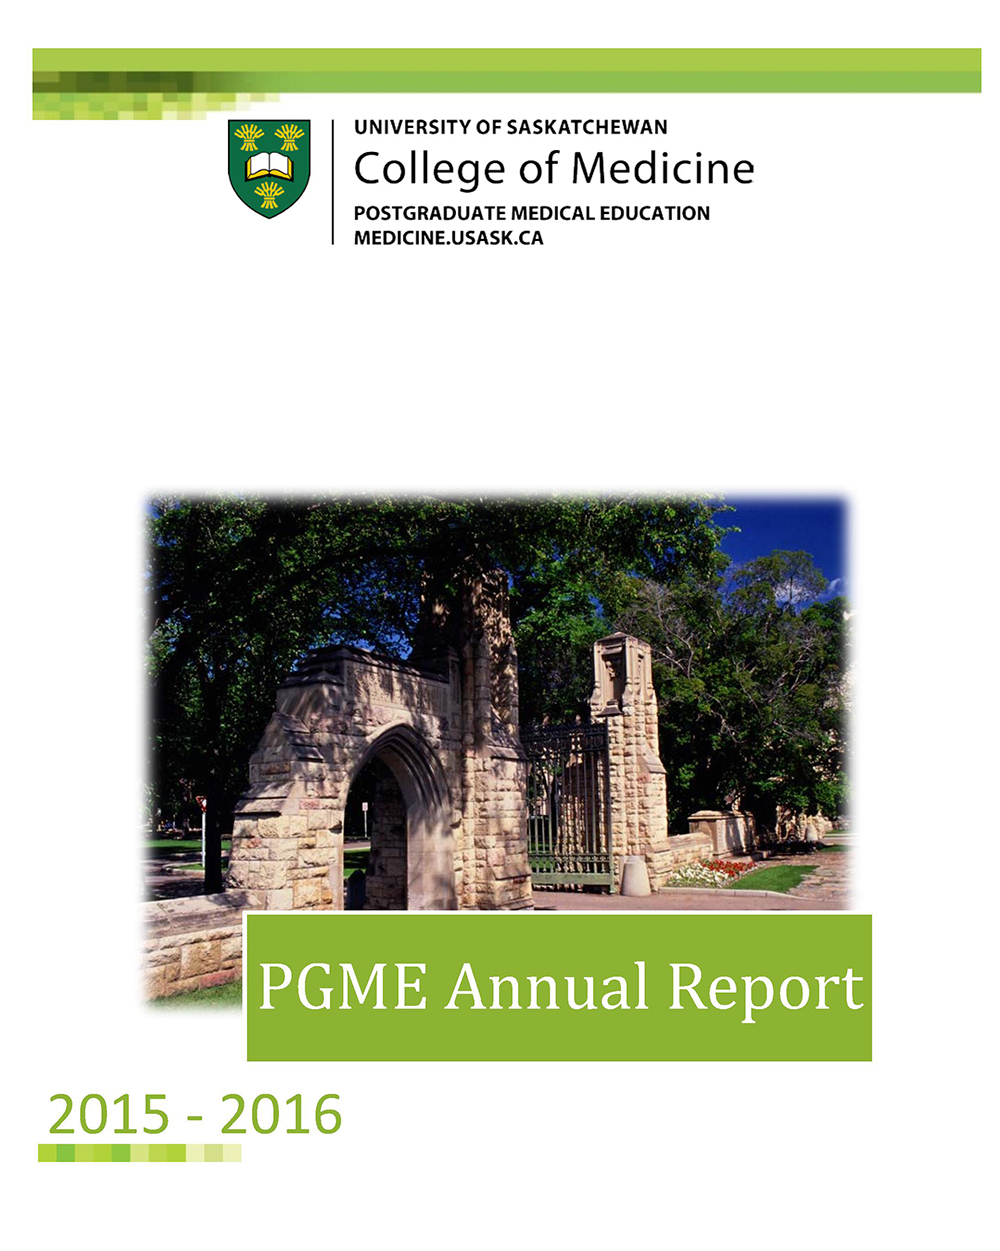 2015-2016 PGME Annual Report